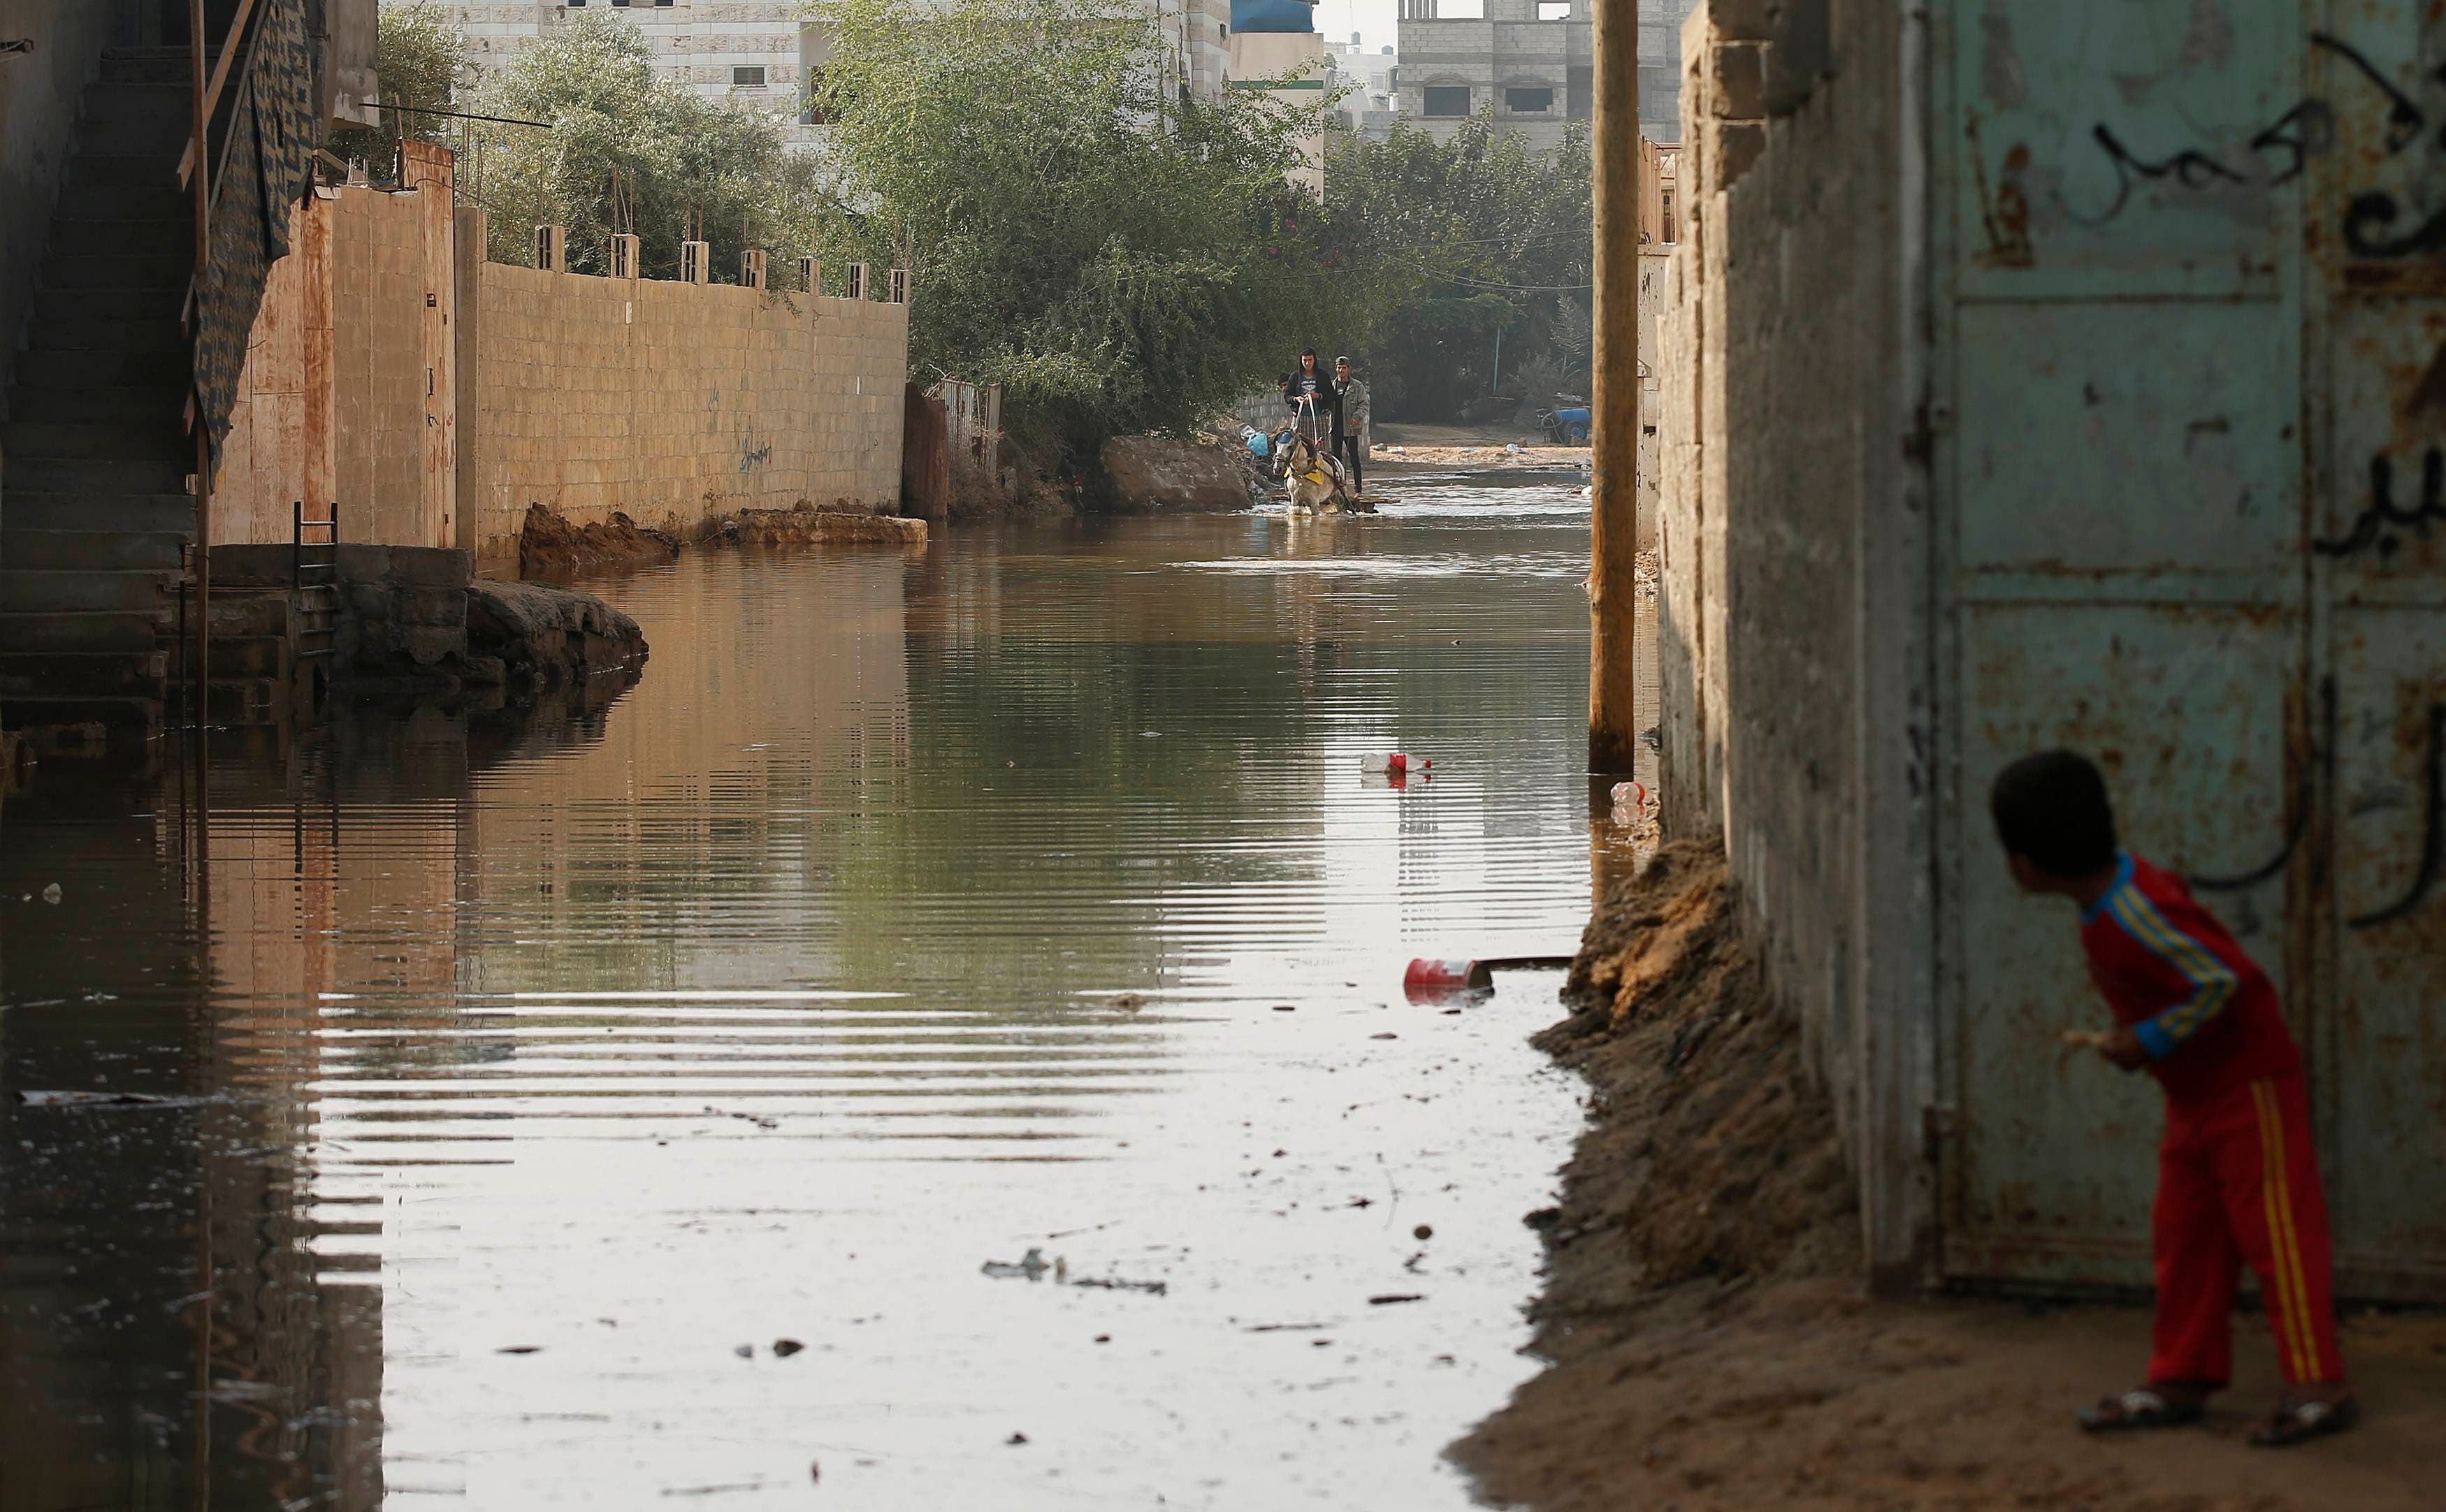 Gaza fuel shortage causes sewage floods